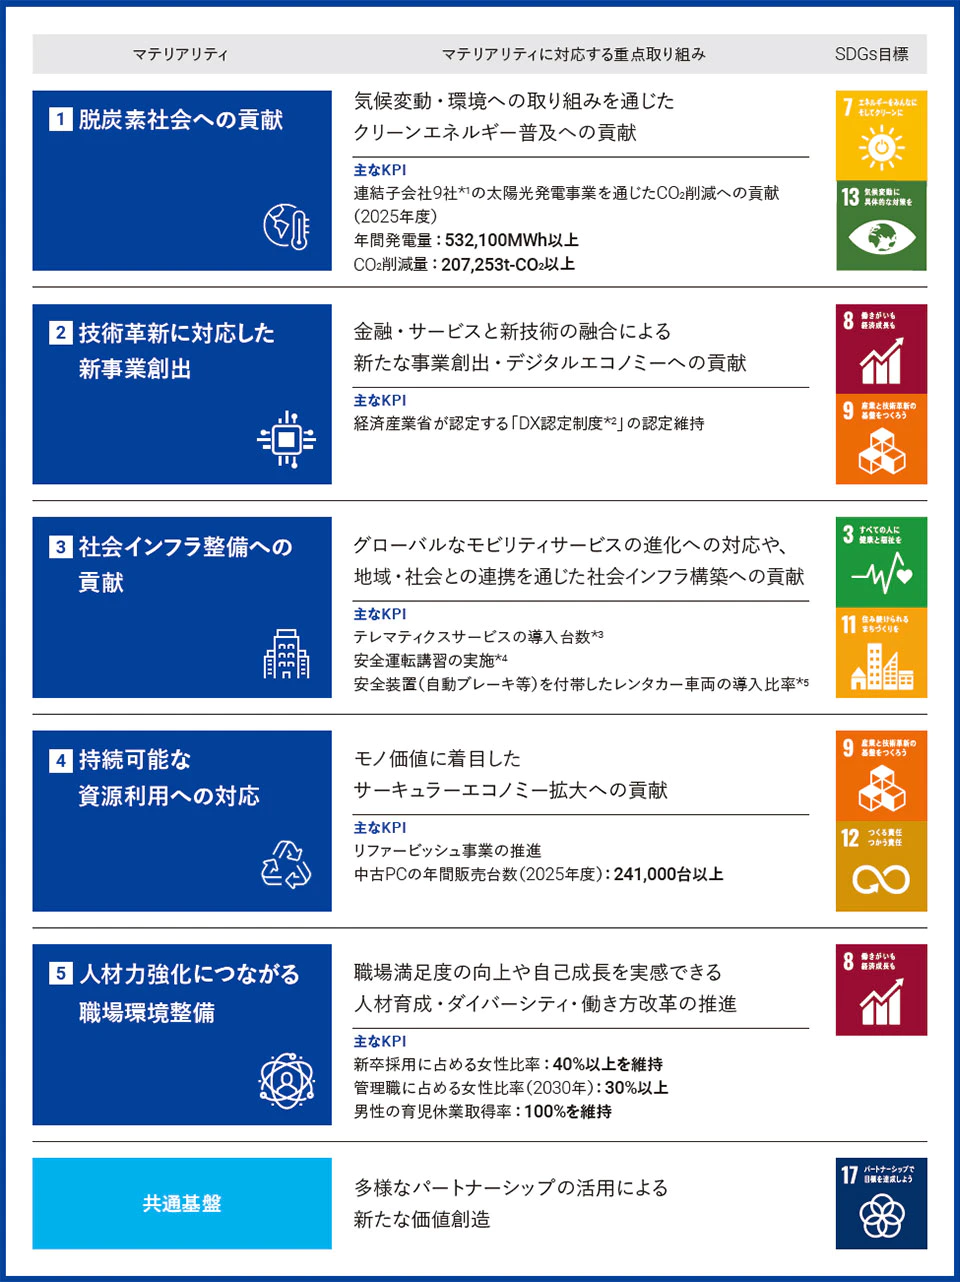 東京センチュリーのマテリアリティ（重要課題）は、1.「脱炭素社会への貢献」：気候変動・環境への取り組みを通じたクリーンエネルギー普及への貢献、2.「技術革新に対応した新事業創出」：金融・サービスと新技術の融合による新たな事業創出・デジタルエコノミーへの貢献、3.「社会インフラ整備への貢献」：グローバルなモビリティサービスの進化への対応や、地域・社会との連携を通じた社会インフラ構築への貢献、4.「持続可能な資源利用への対応」：モノ価値に着目したサーキュラーエコノミー拡大への貢献、5.「人材力強化につながる職場環境整備」：職場満足度の向上や自己成長を実感できる人材育成・ダイバーシティ・働き方改革の推進、に加え、共通基盤として「多様なパートナーシップの活用による新たな価値創造」があります。